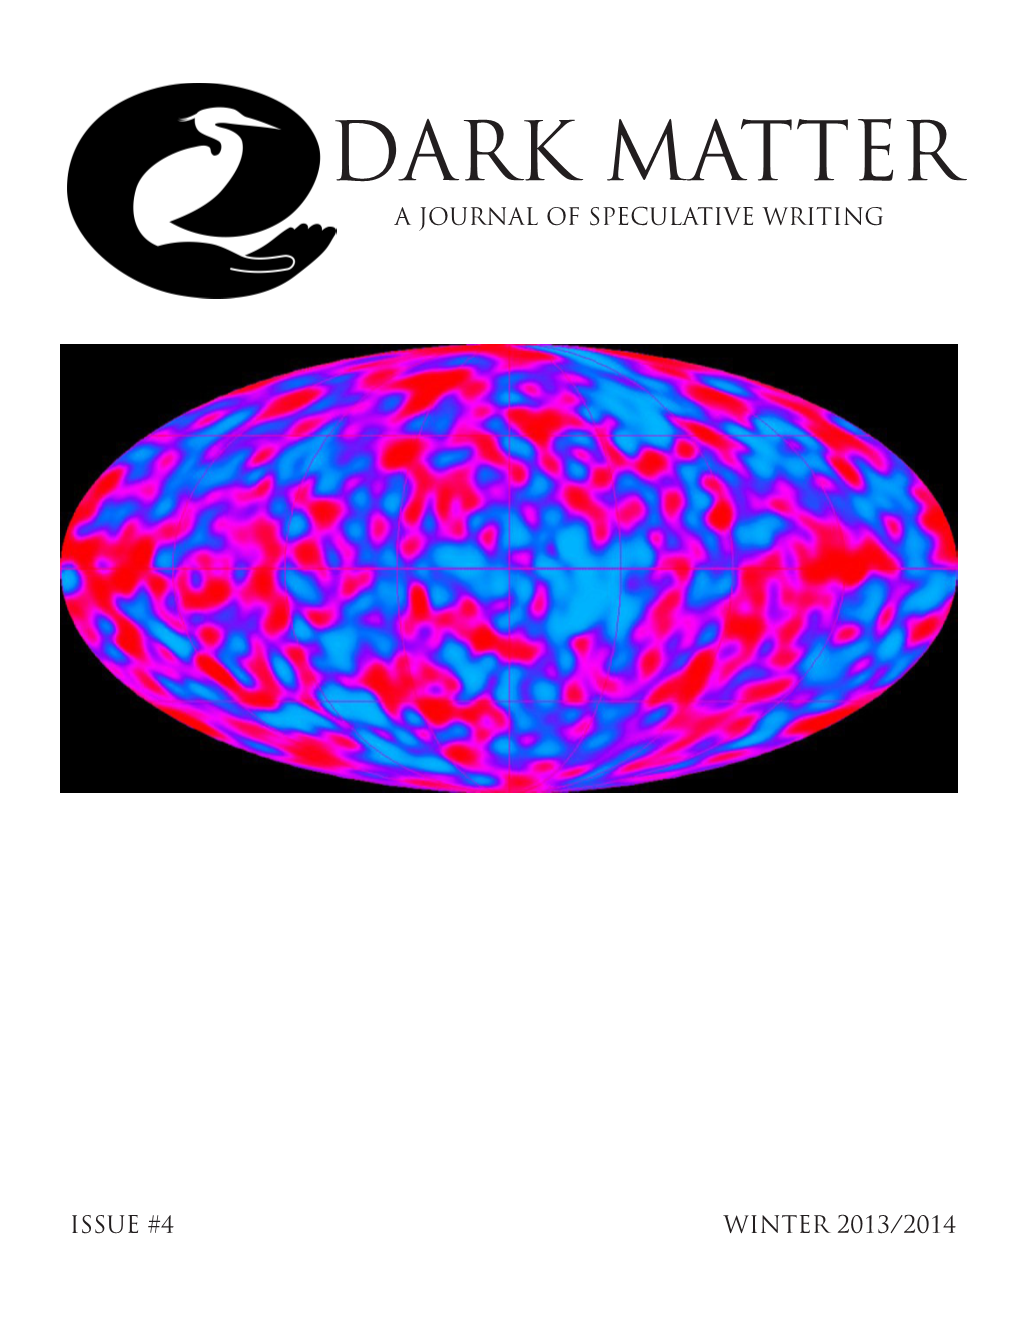 DARK MATTER a Journal of Speculative Writing